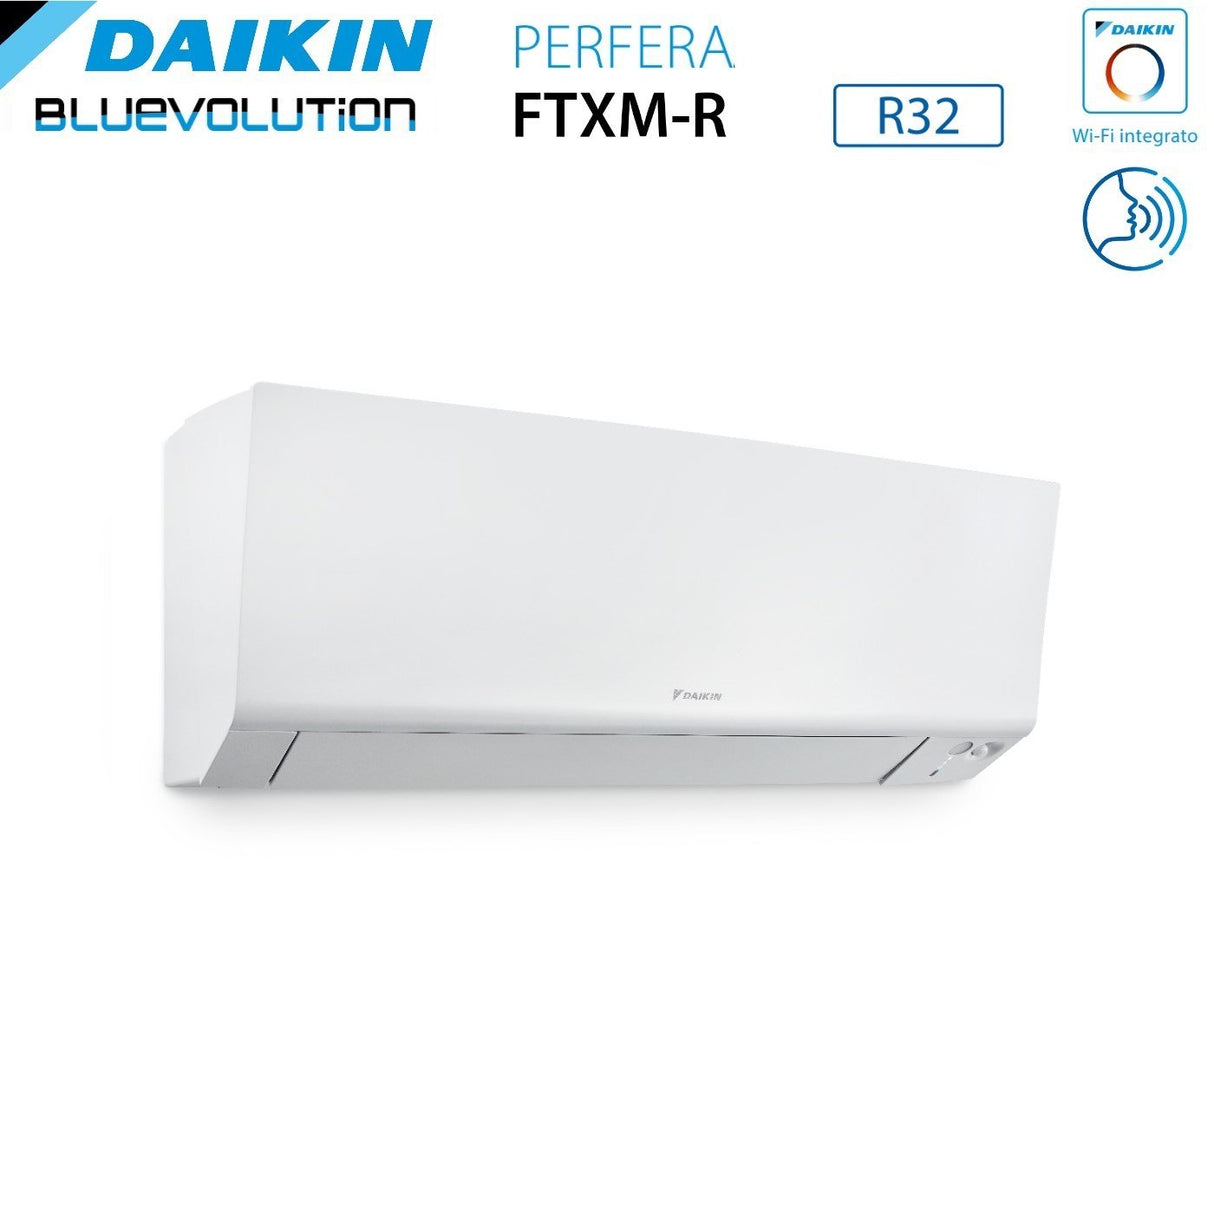 immagine-4-daikin-climatizzatore-condizionatore-daikin-bluevolution-quadri-split-inverter-serie-ftxmr-perfera-wall-7999-con-4mxm68a-r-32-wi-fi-integrato-7000900090009000-garanzia-italiana